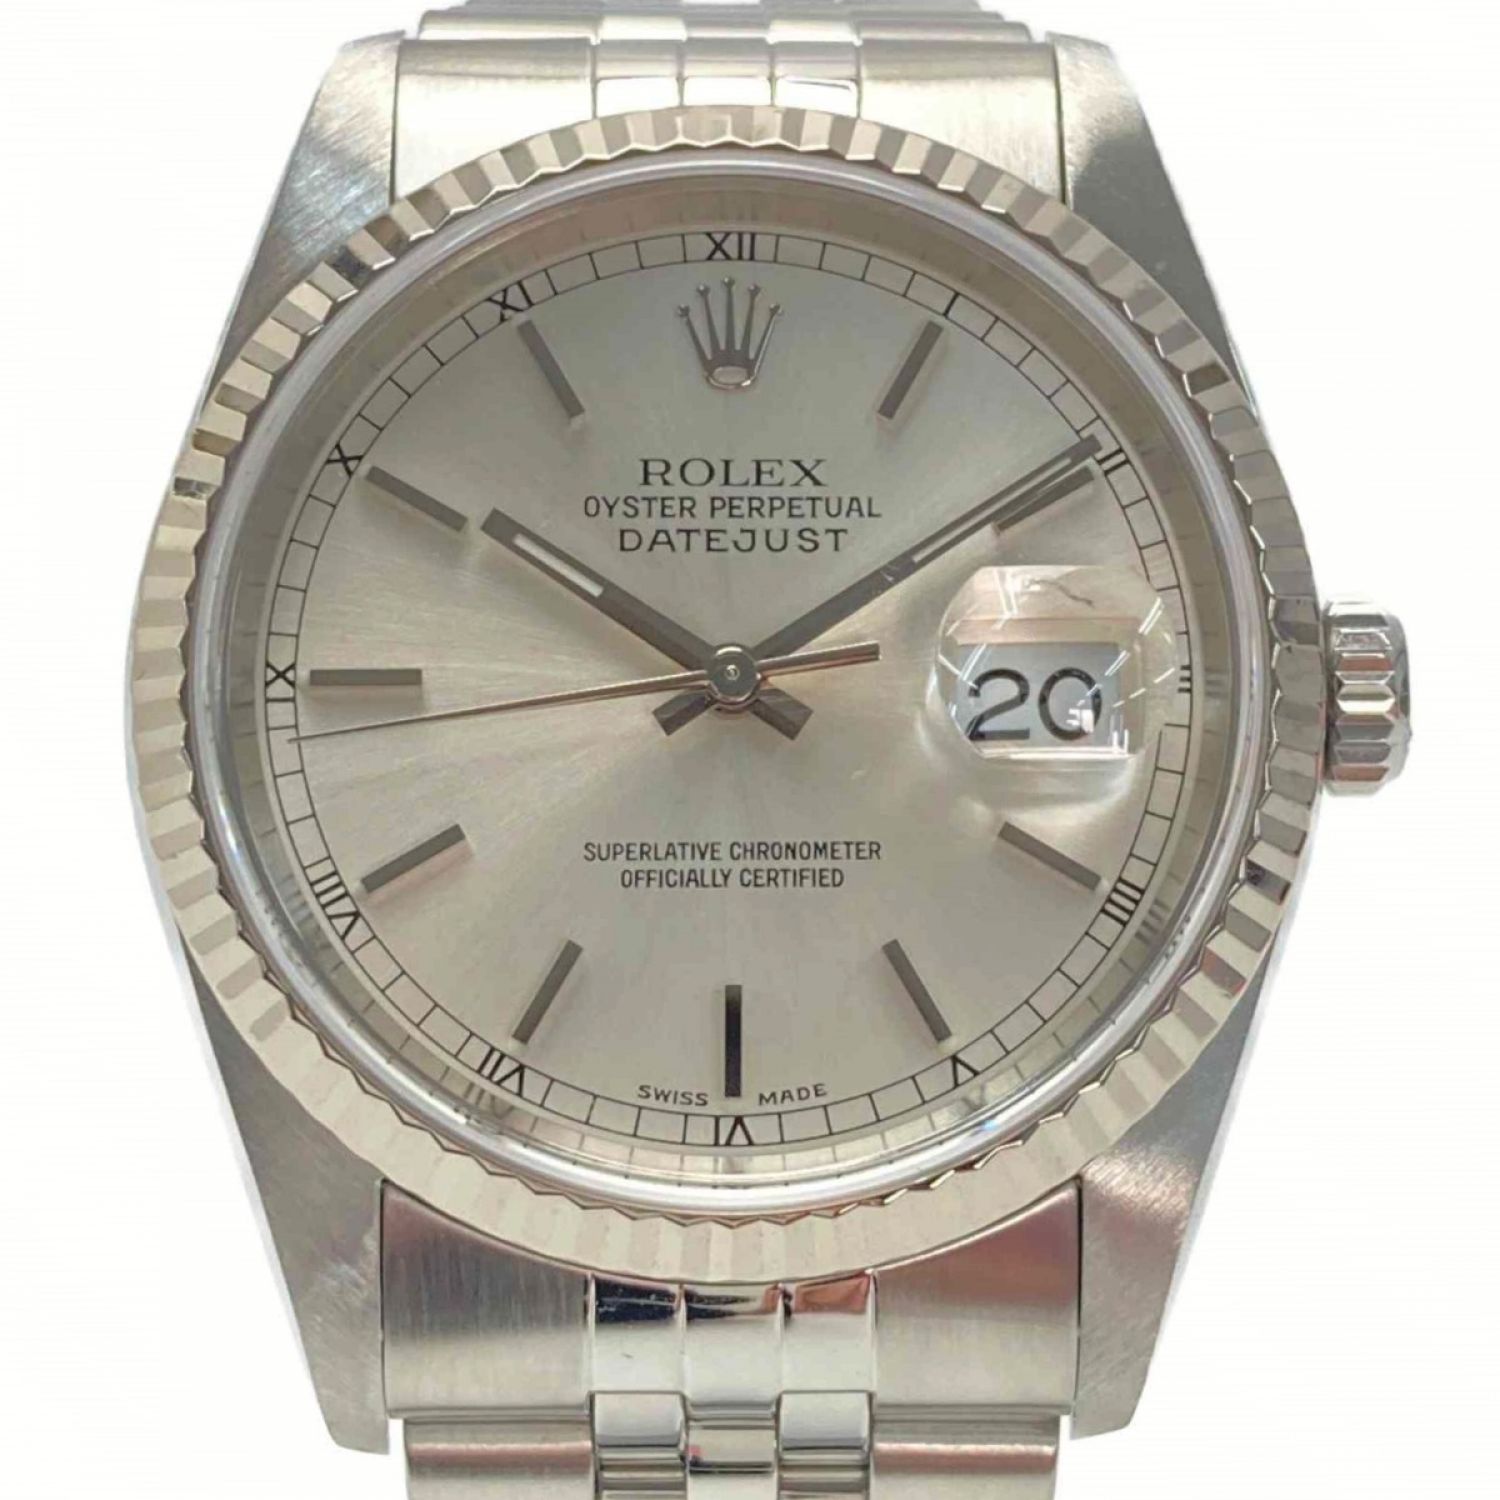 ROLEX ロレックス デイトジャスト SS K18WG 腕時計 時計 オイスターパーペチュアル X番 1991年式 16234 シルバー メンズ おしゃれ かっこいい おすすめ ギフト プレゼント ステンレススチール K18ホワイトゴールドBIM送料無料